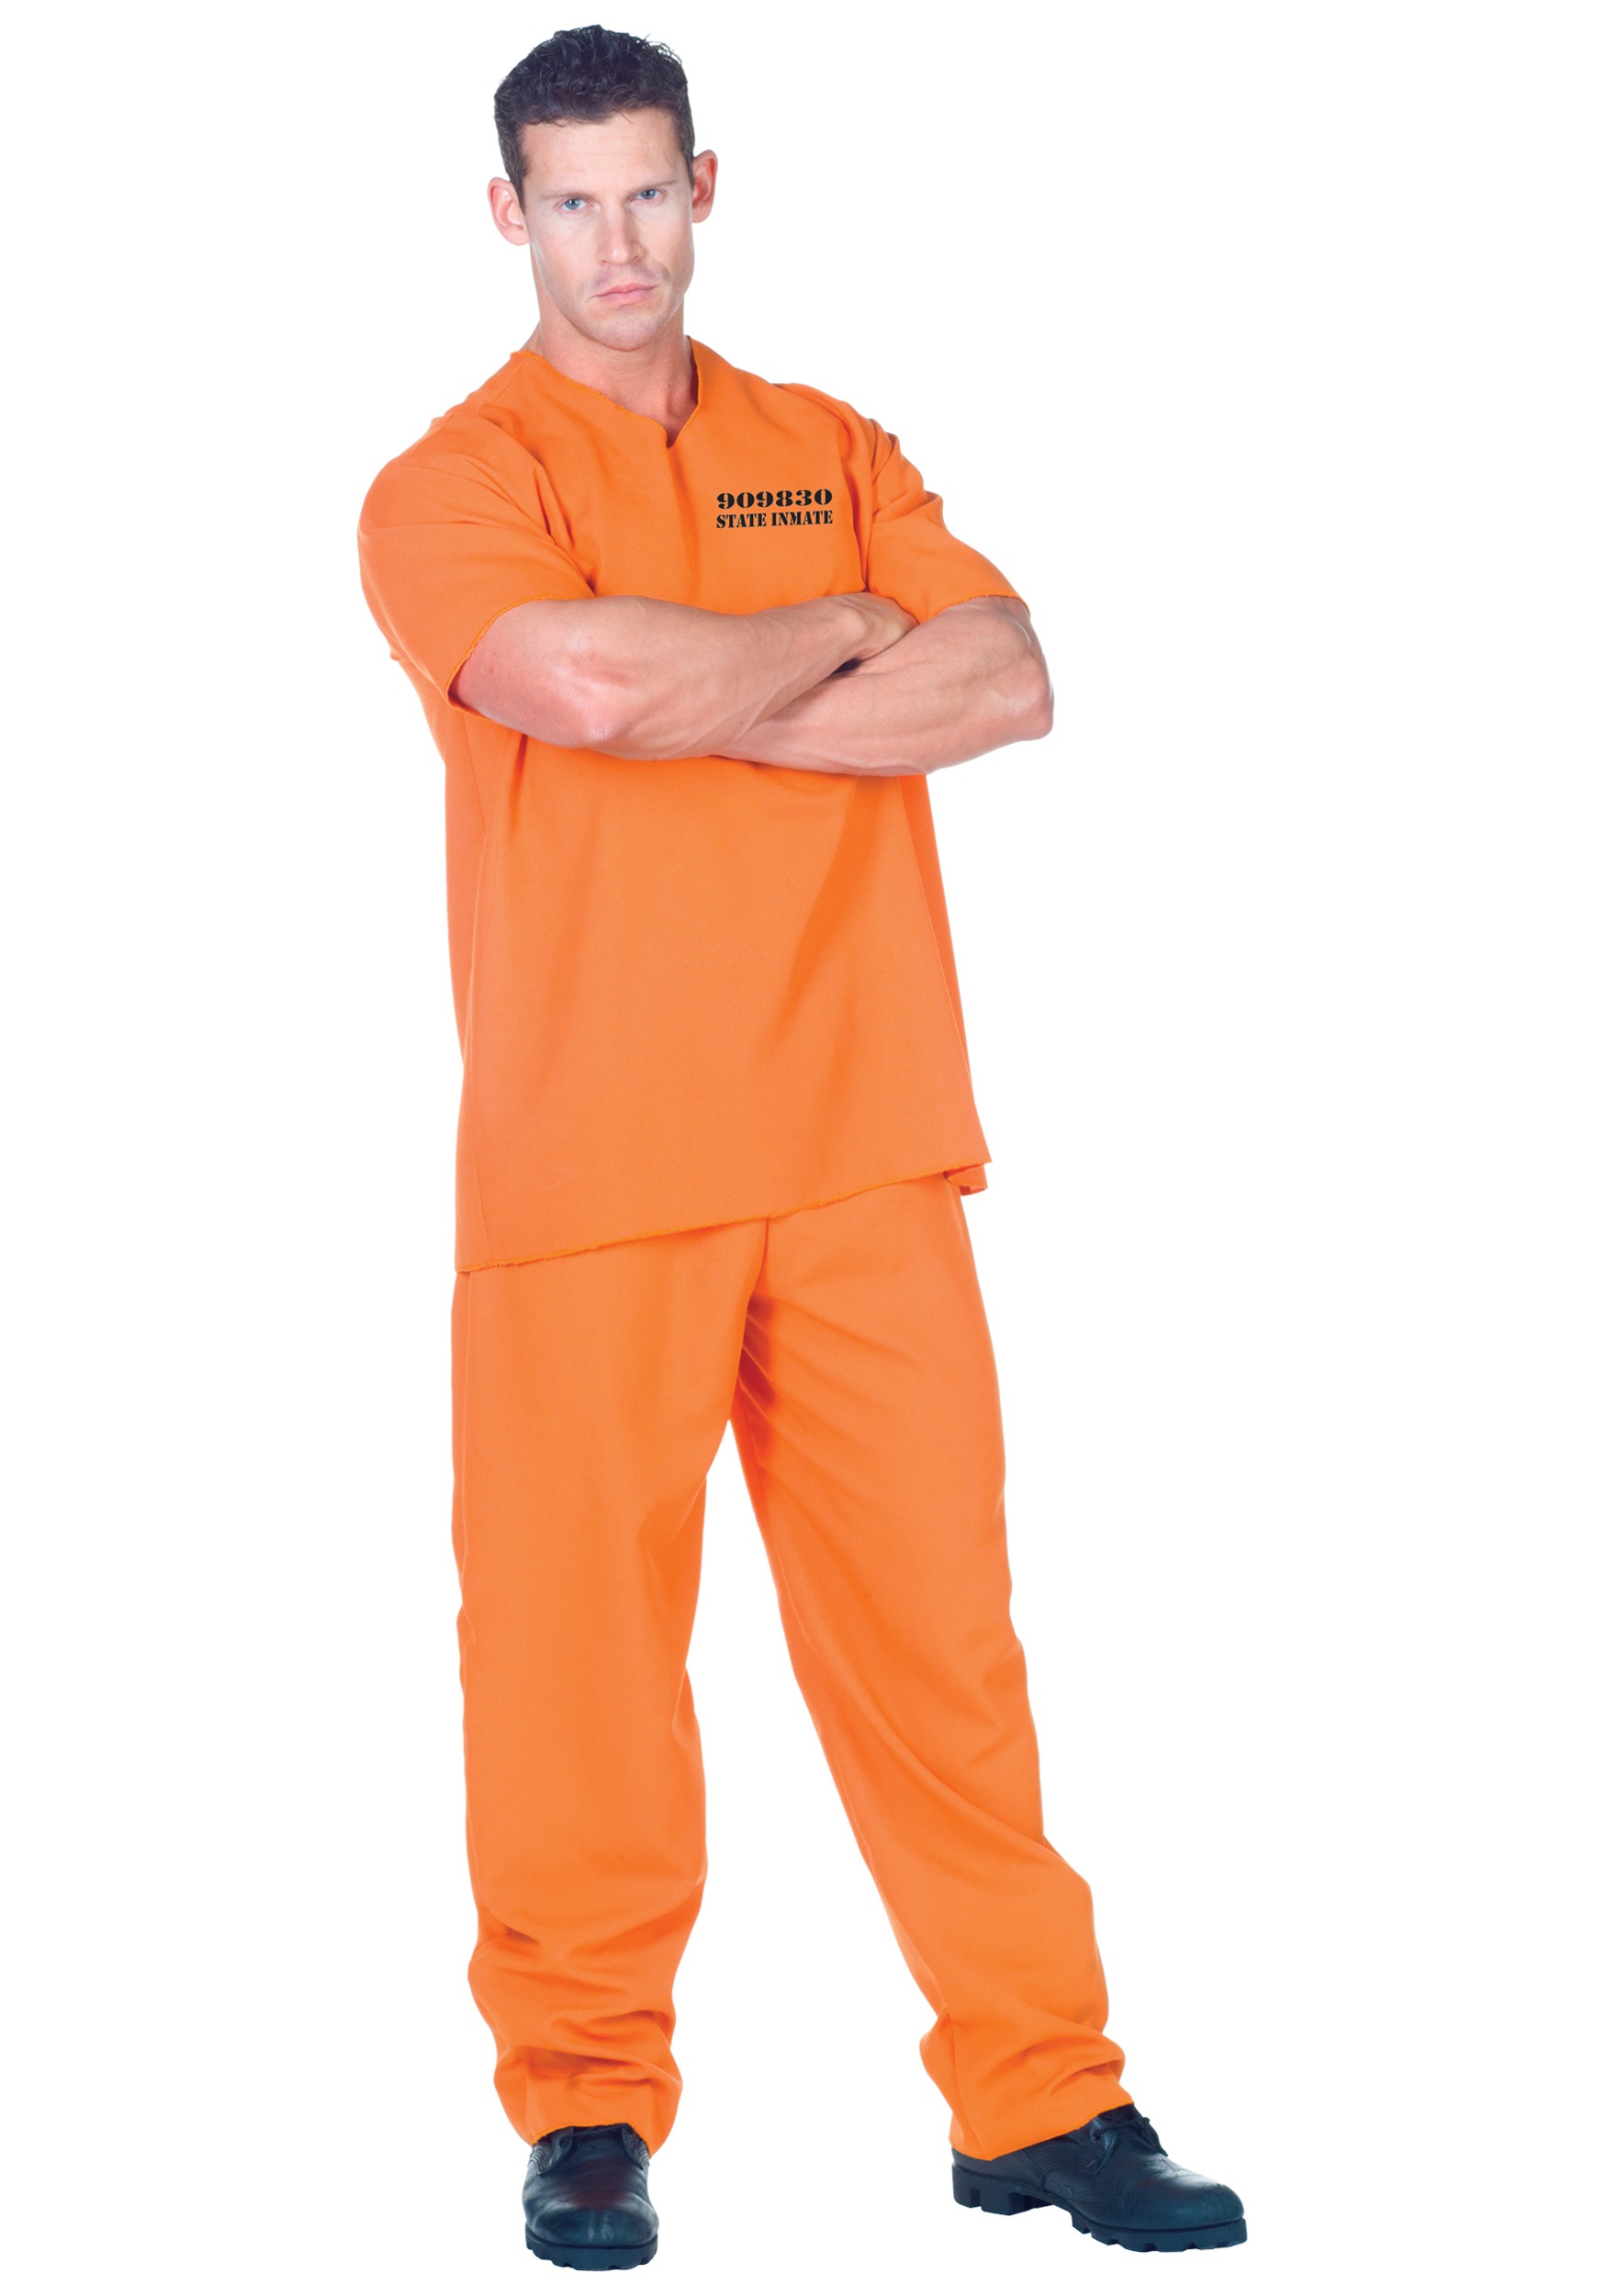 Photos - Fancy Dress Underwraps Public Offender Inmate Costume for Men Orange UN29436